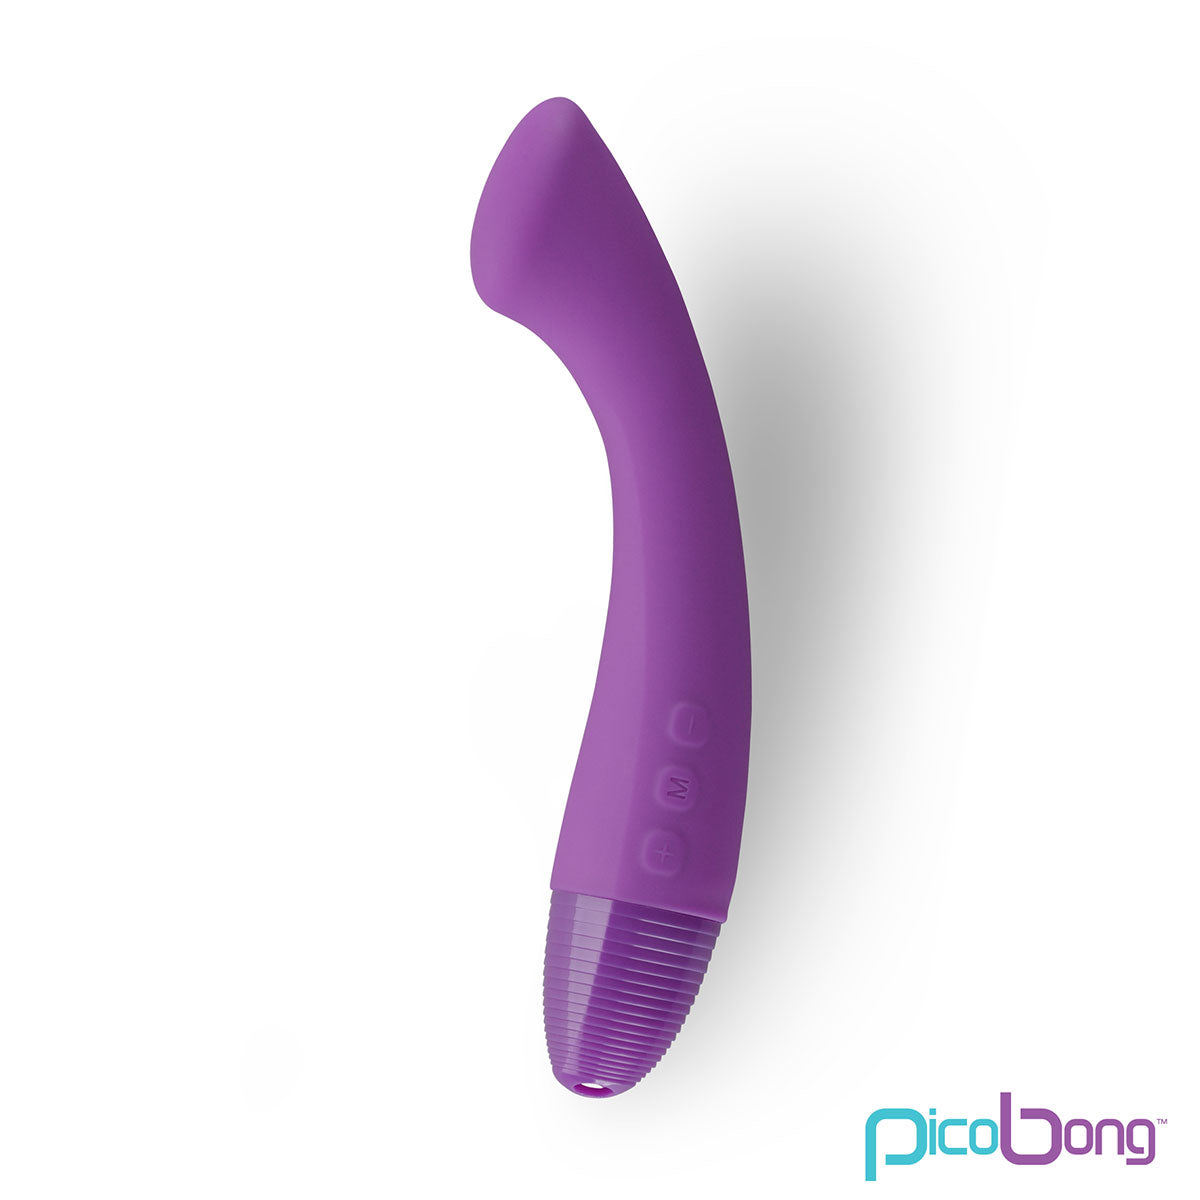 PicoBong Moka G-Spot Vibrator - Experience Pleasure